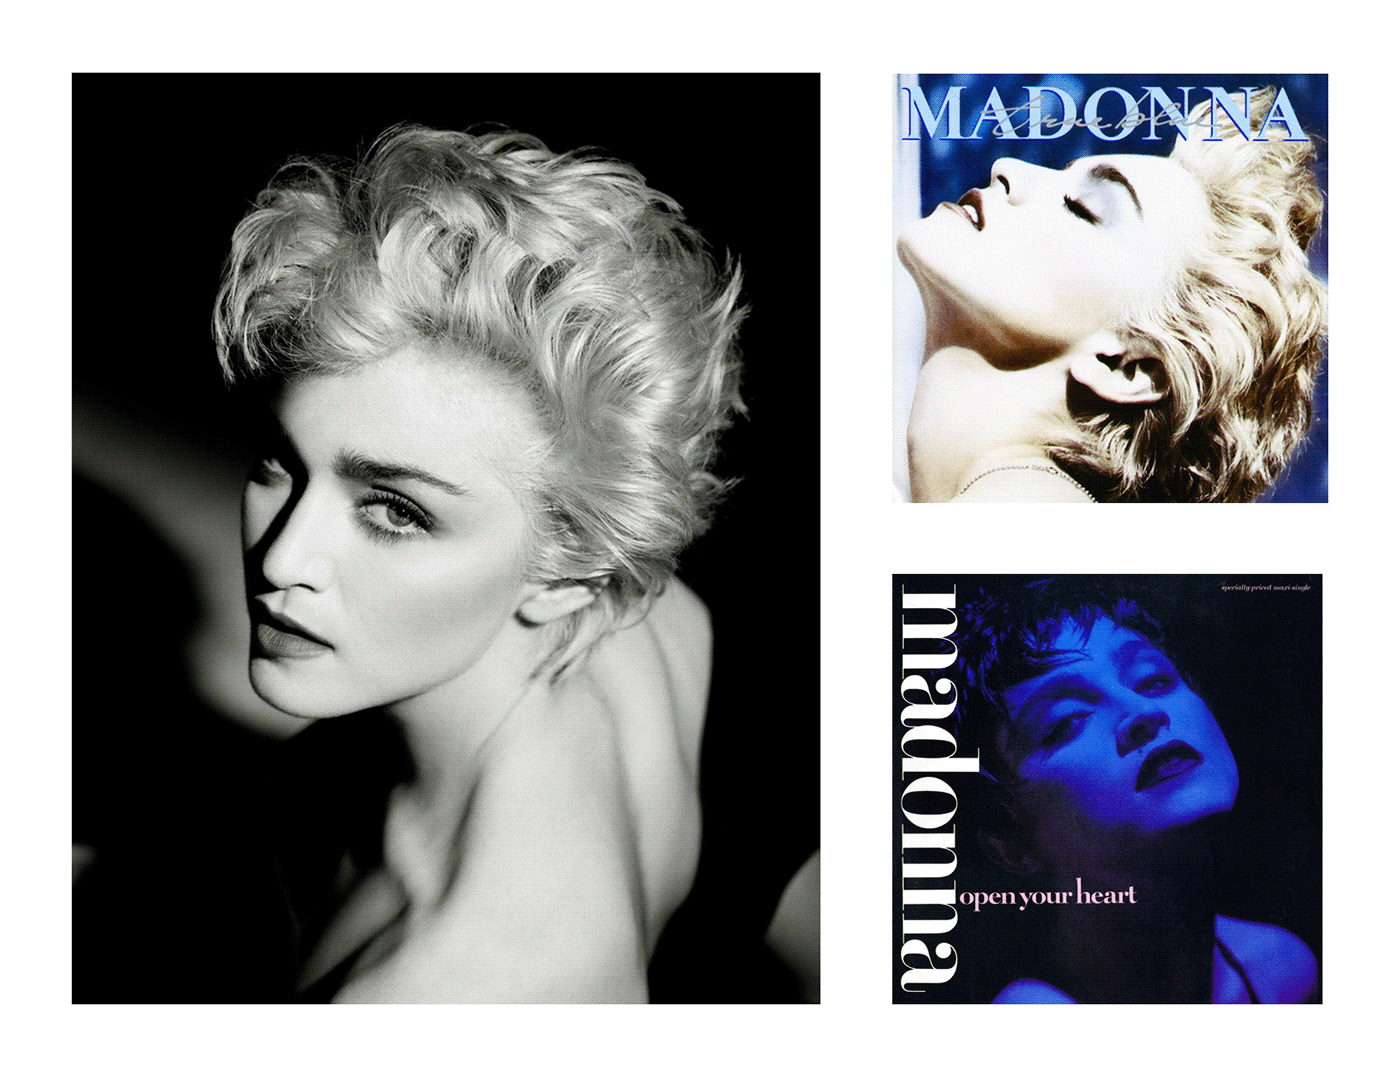 madonna true blue album cover album cover redesign 80's music 80s vintage Retro music 80's style